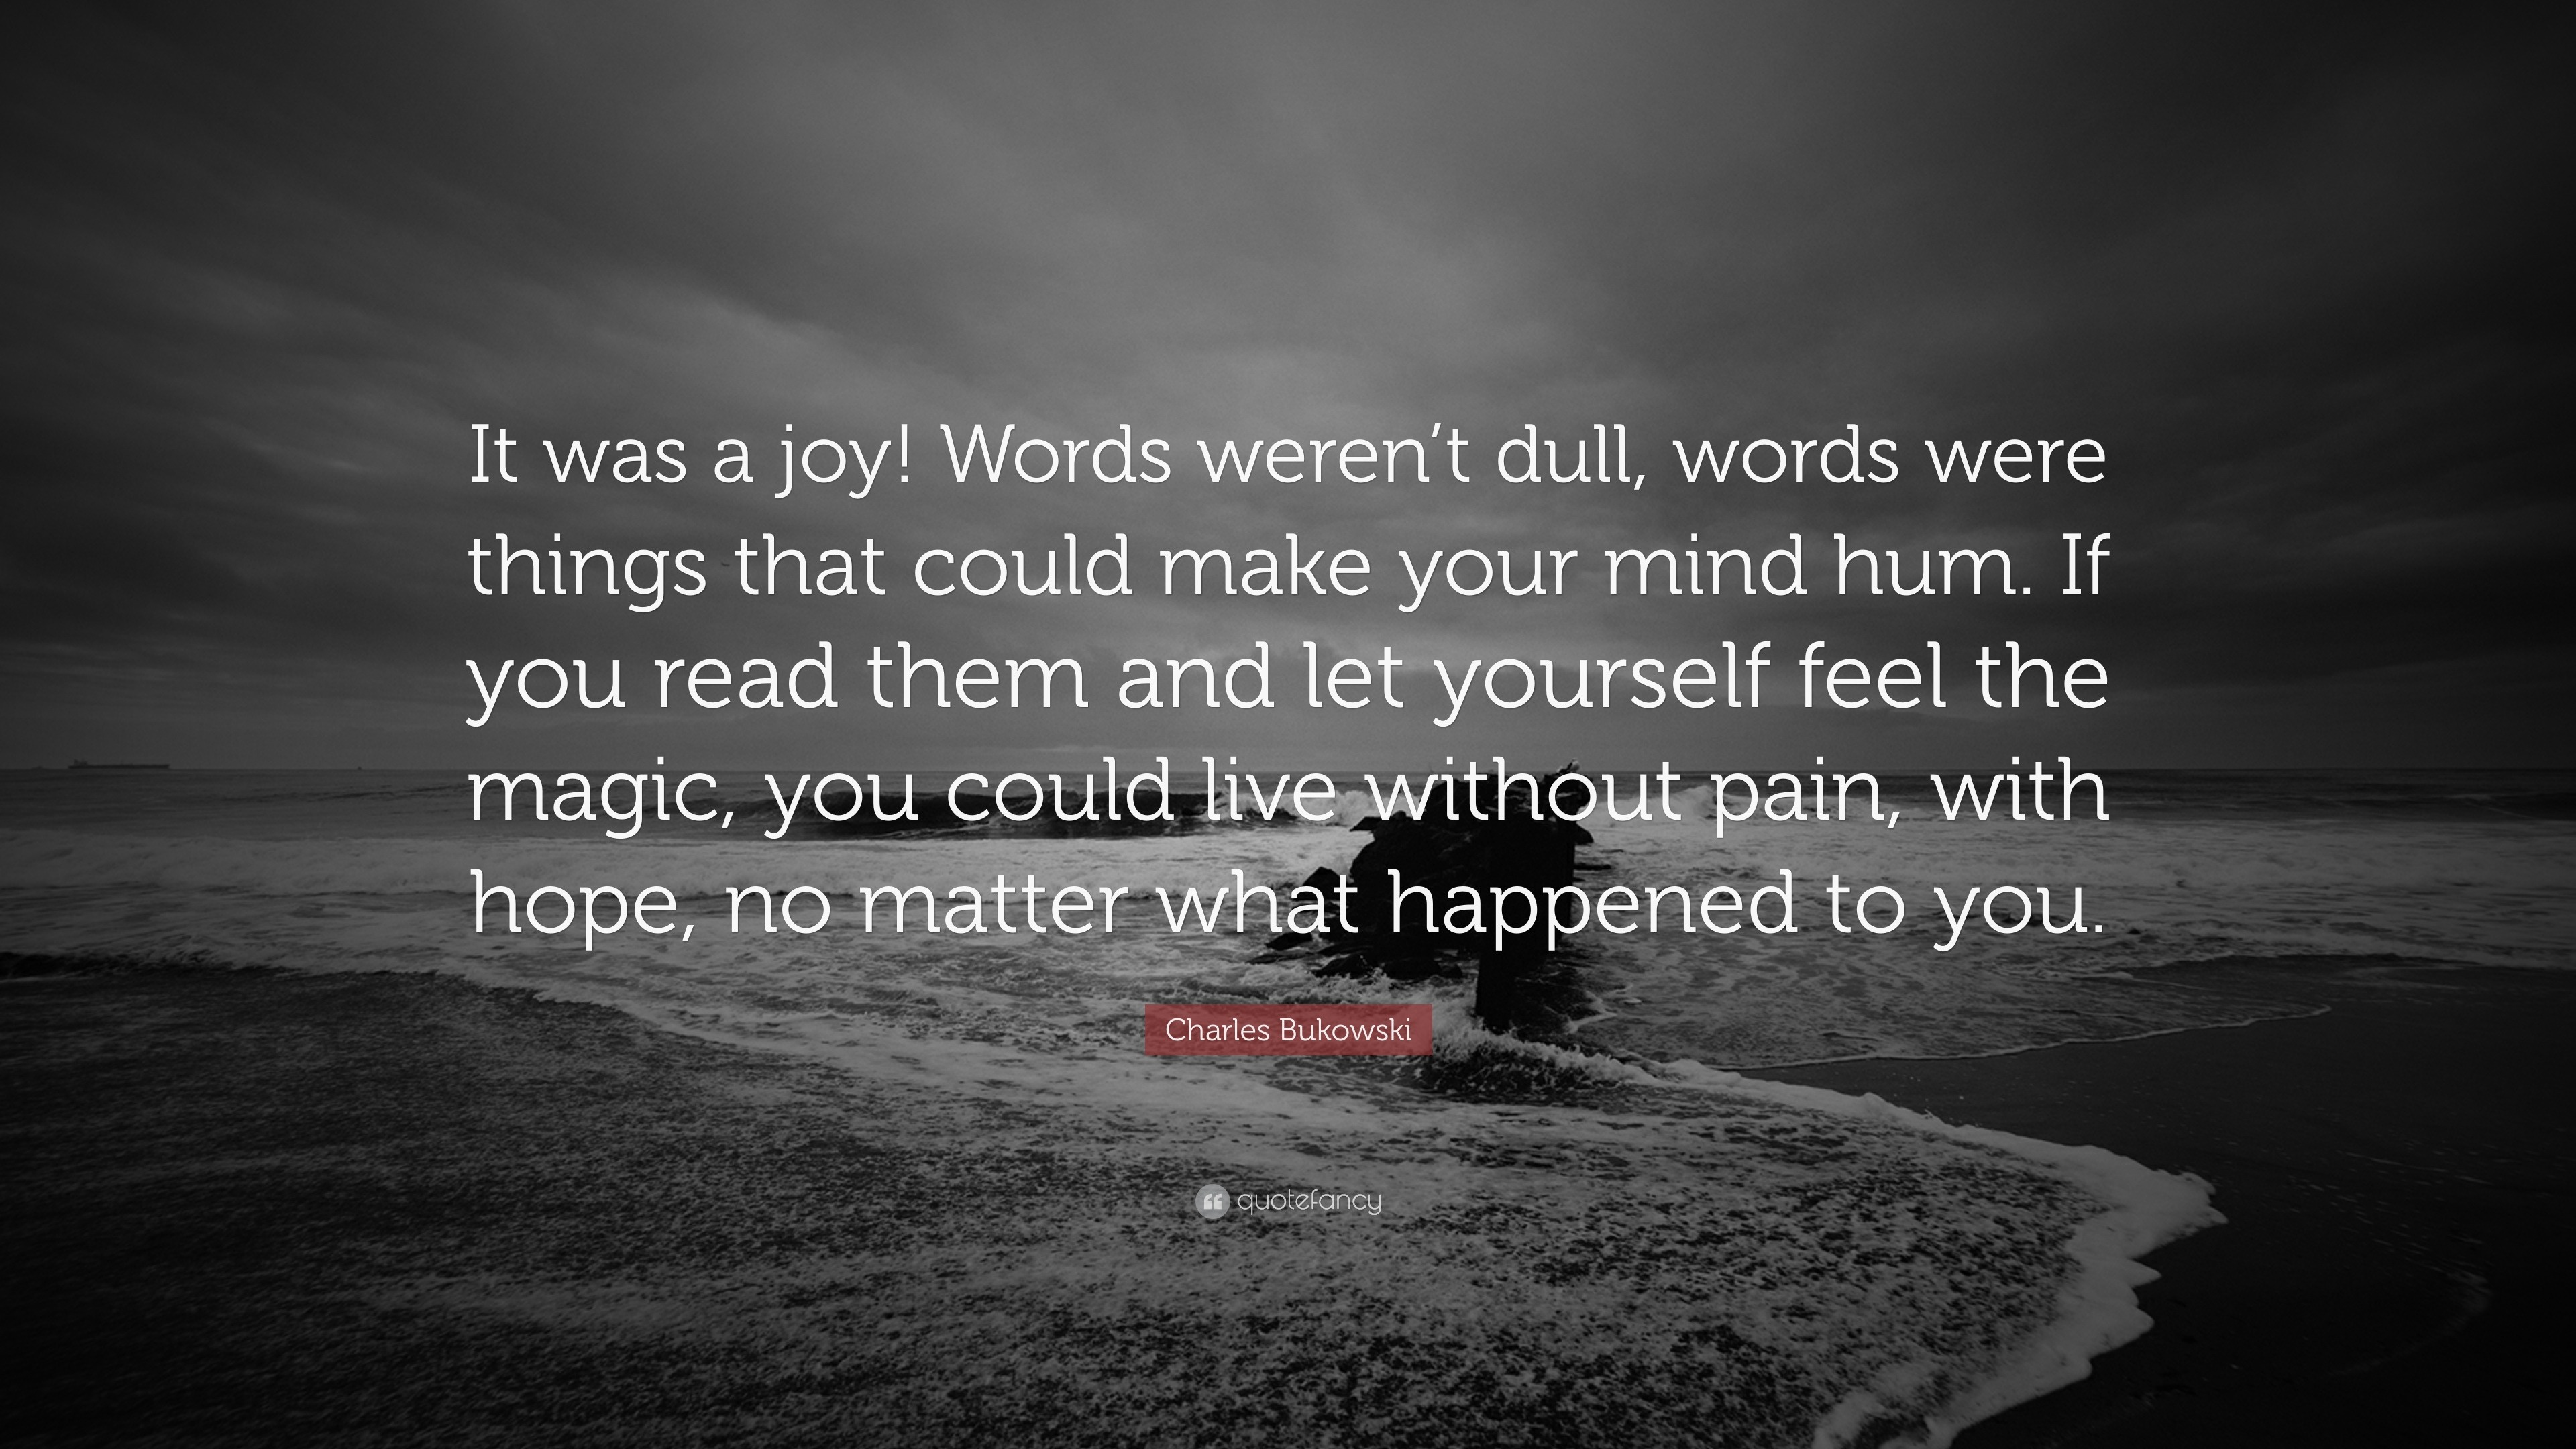 Charles Bukowski Quote “It was a joy Words weren t dull